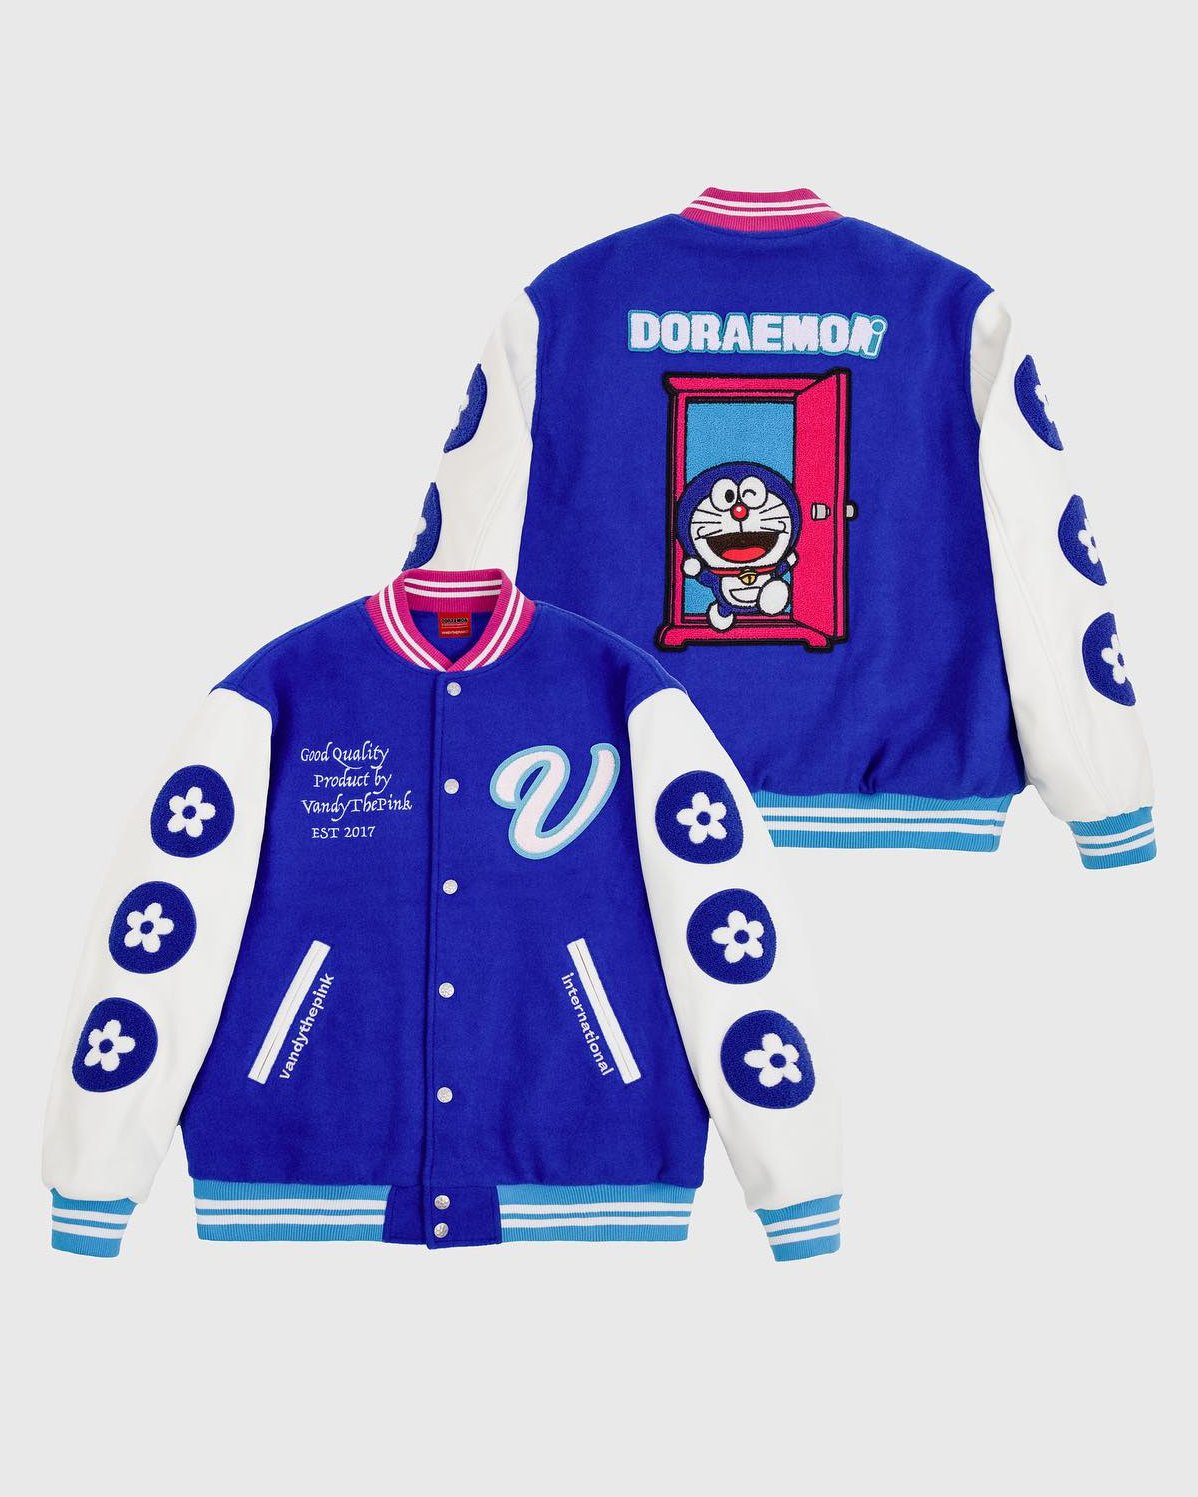  VANDYTHEPINK Doraemon Varsity Jacket Release Date Info